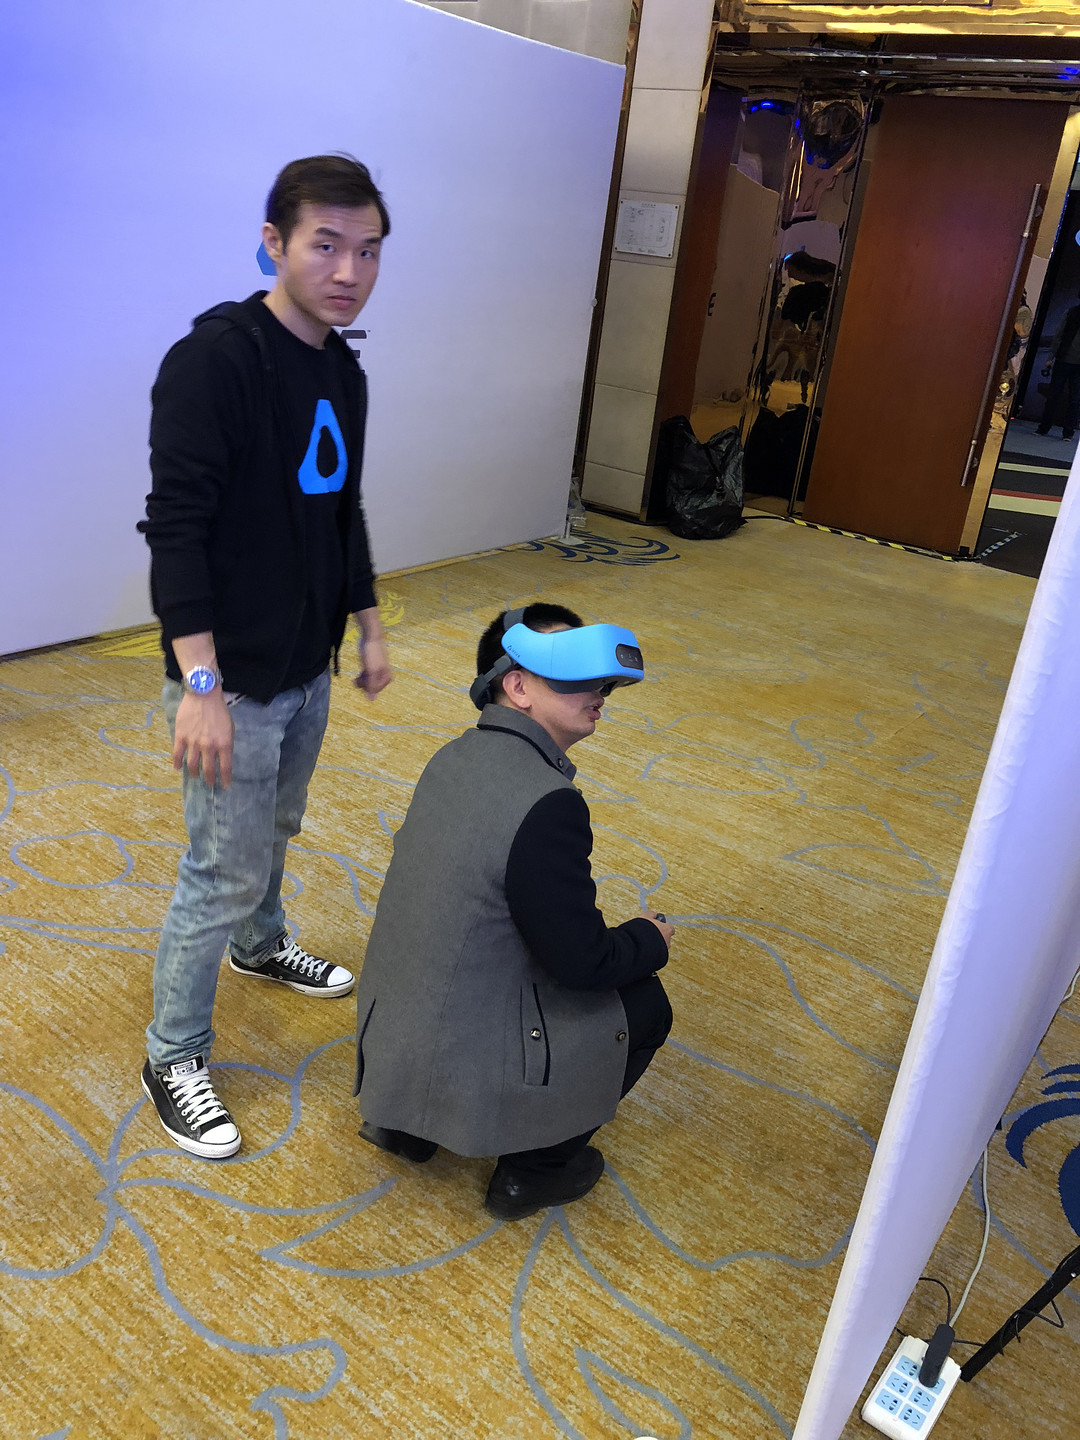 “VR半月谈”第17期：当VR遇上化工；现场试玩Vive Focus一体机